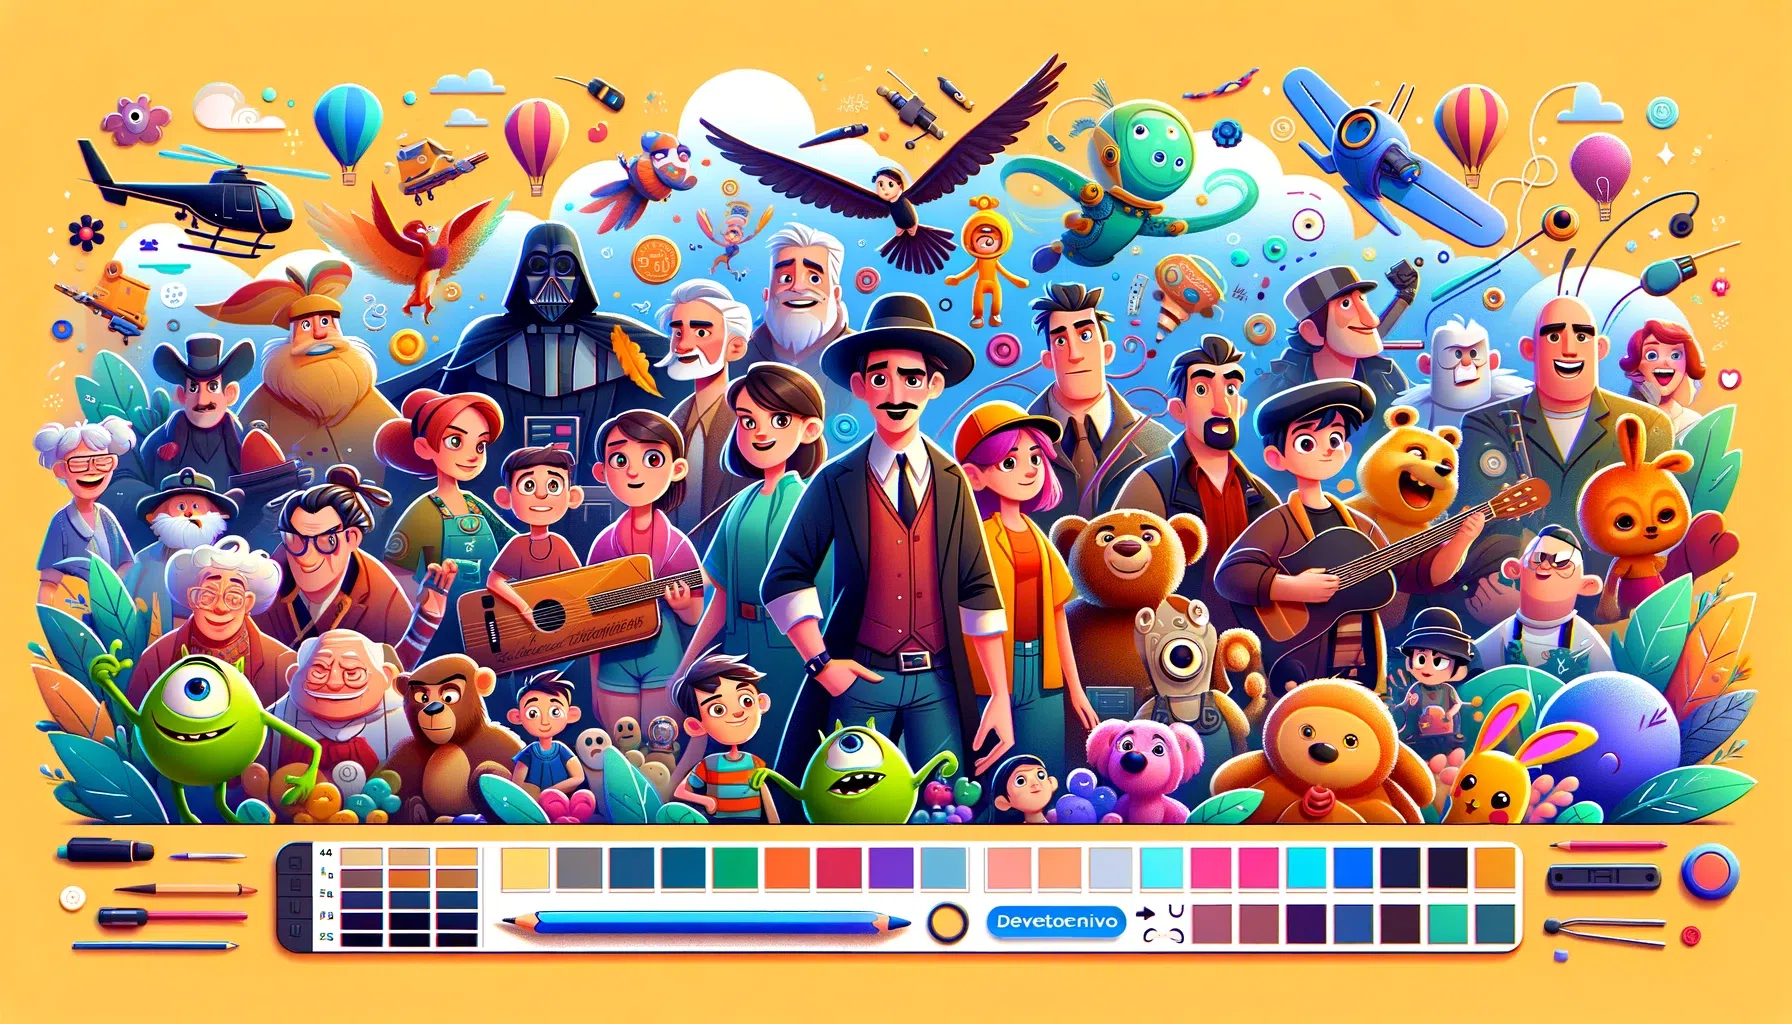 DALL·E 2023-10-28 23.12.36 – Banner horizontal estilo Disney Pixar com uma paleta de cores suaves e mágicas. O design mostra vários personagens animados em diferentes estágios de